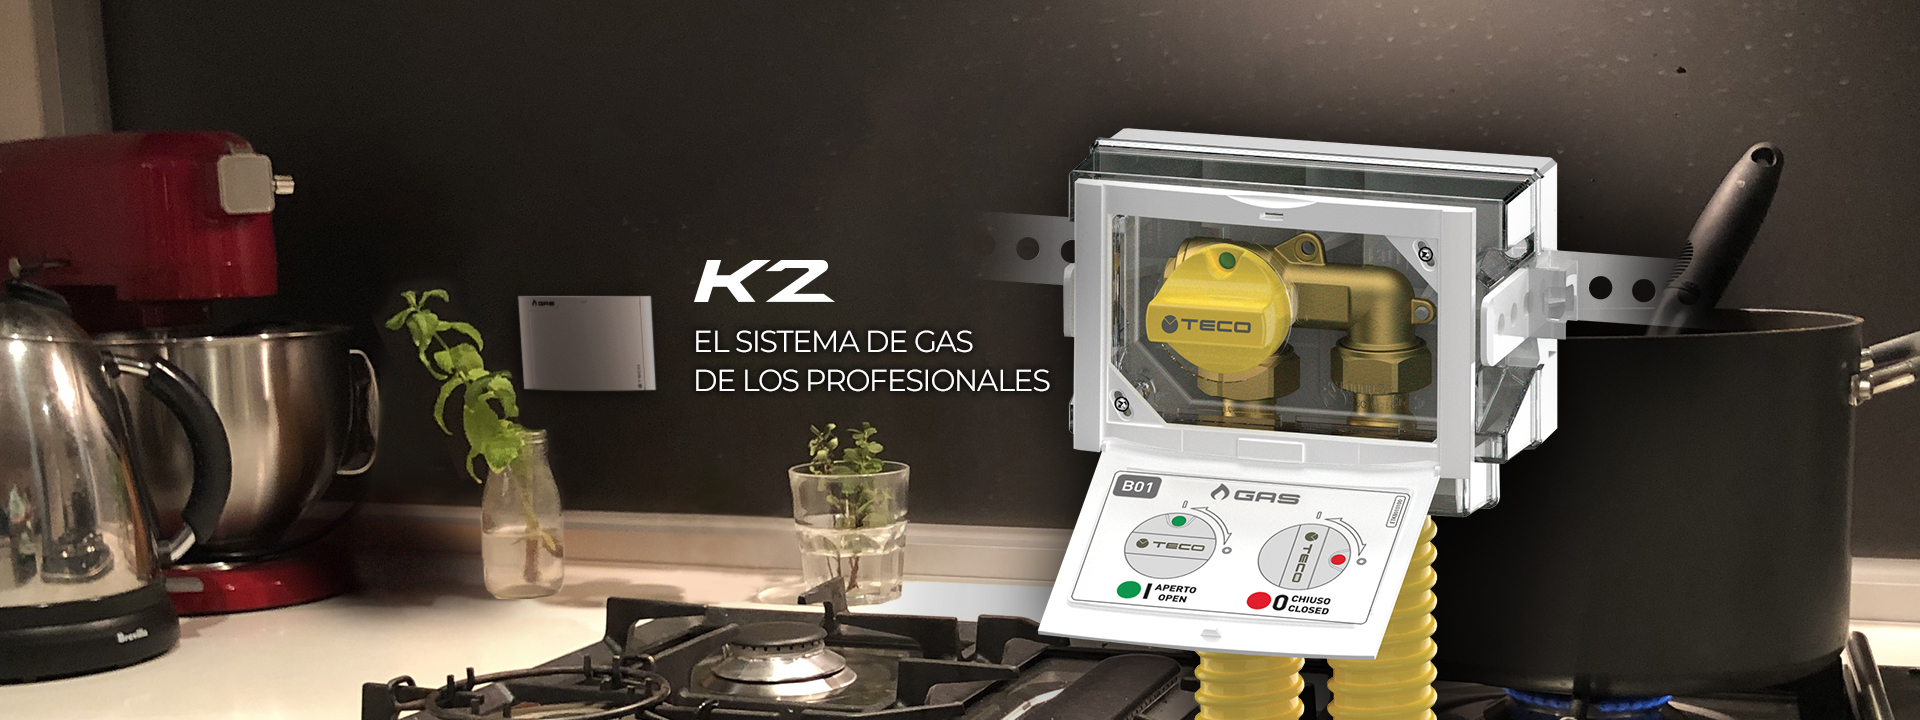 Teco K2: el sistema de gas de los professionales